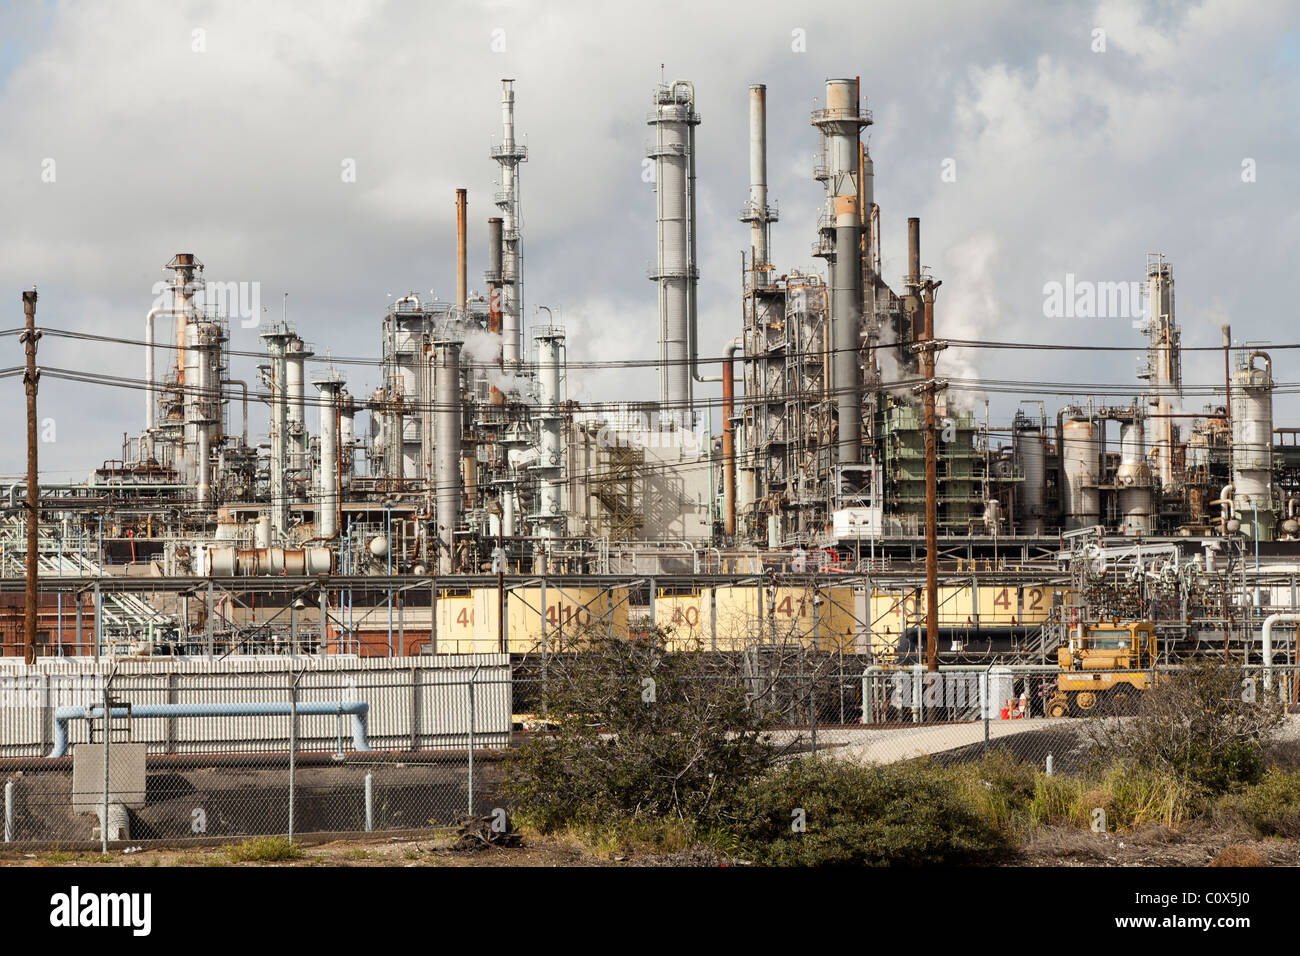 Conoco Phillips oil refinery in San Pedro, California Stock Photo